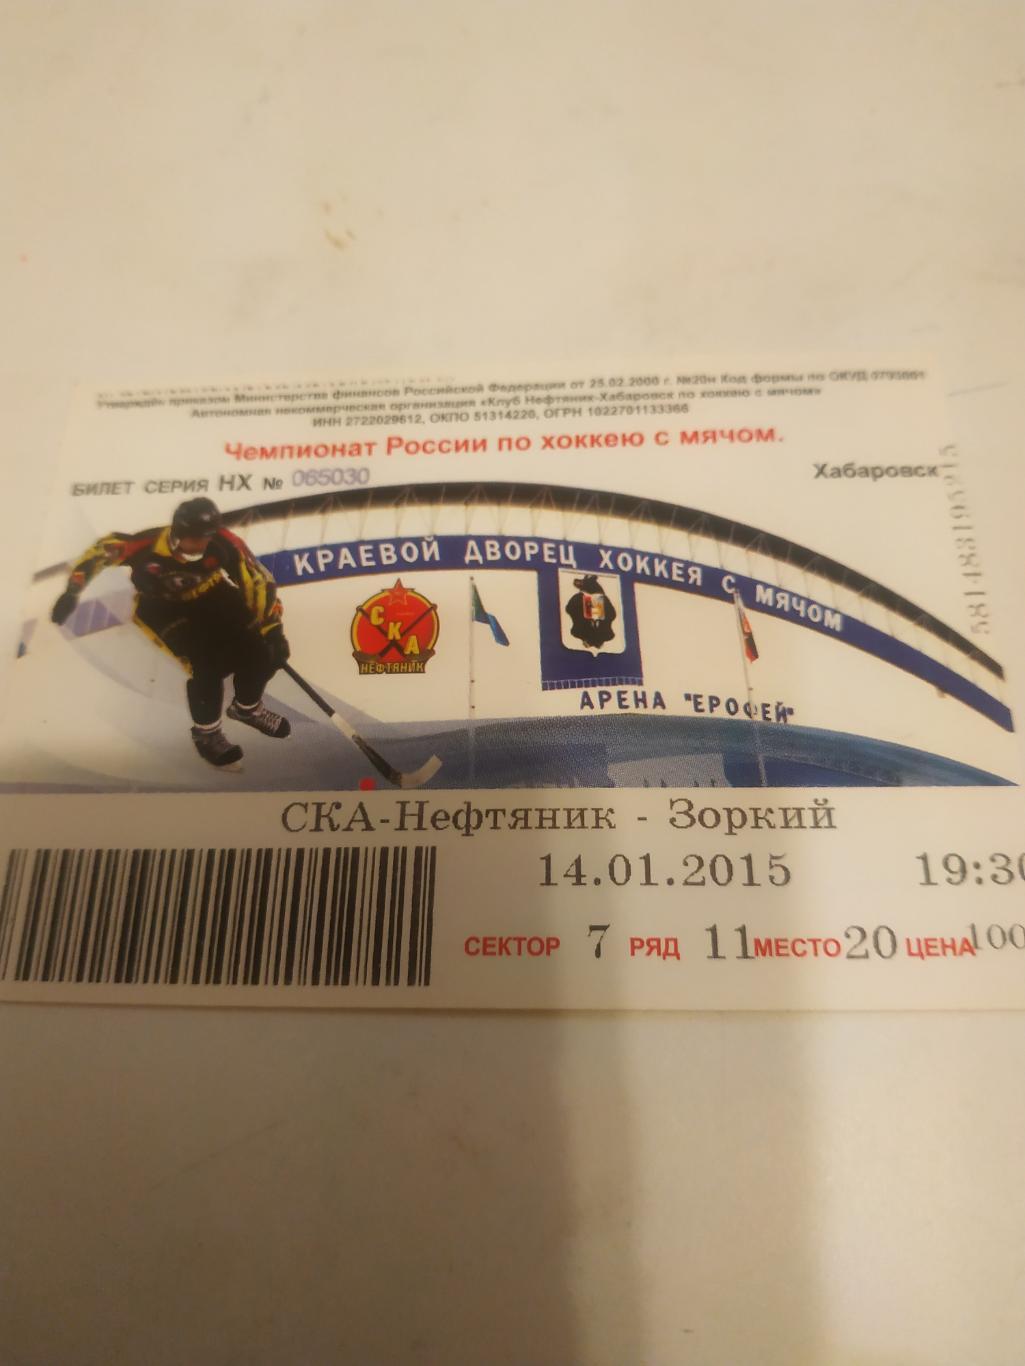 Билет. СКА - Нефтяник (Хабаровск) -Зоркий (Красногорск). 14.01.2015.